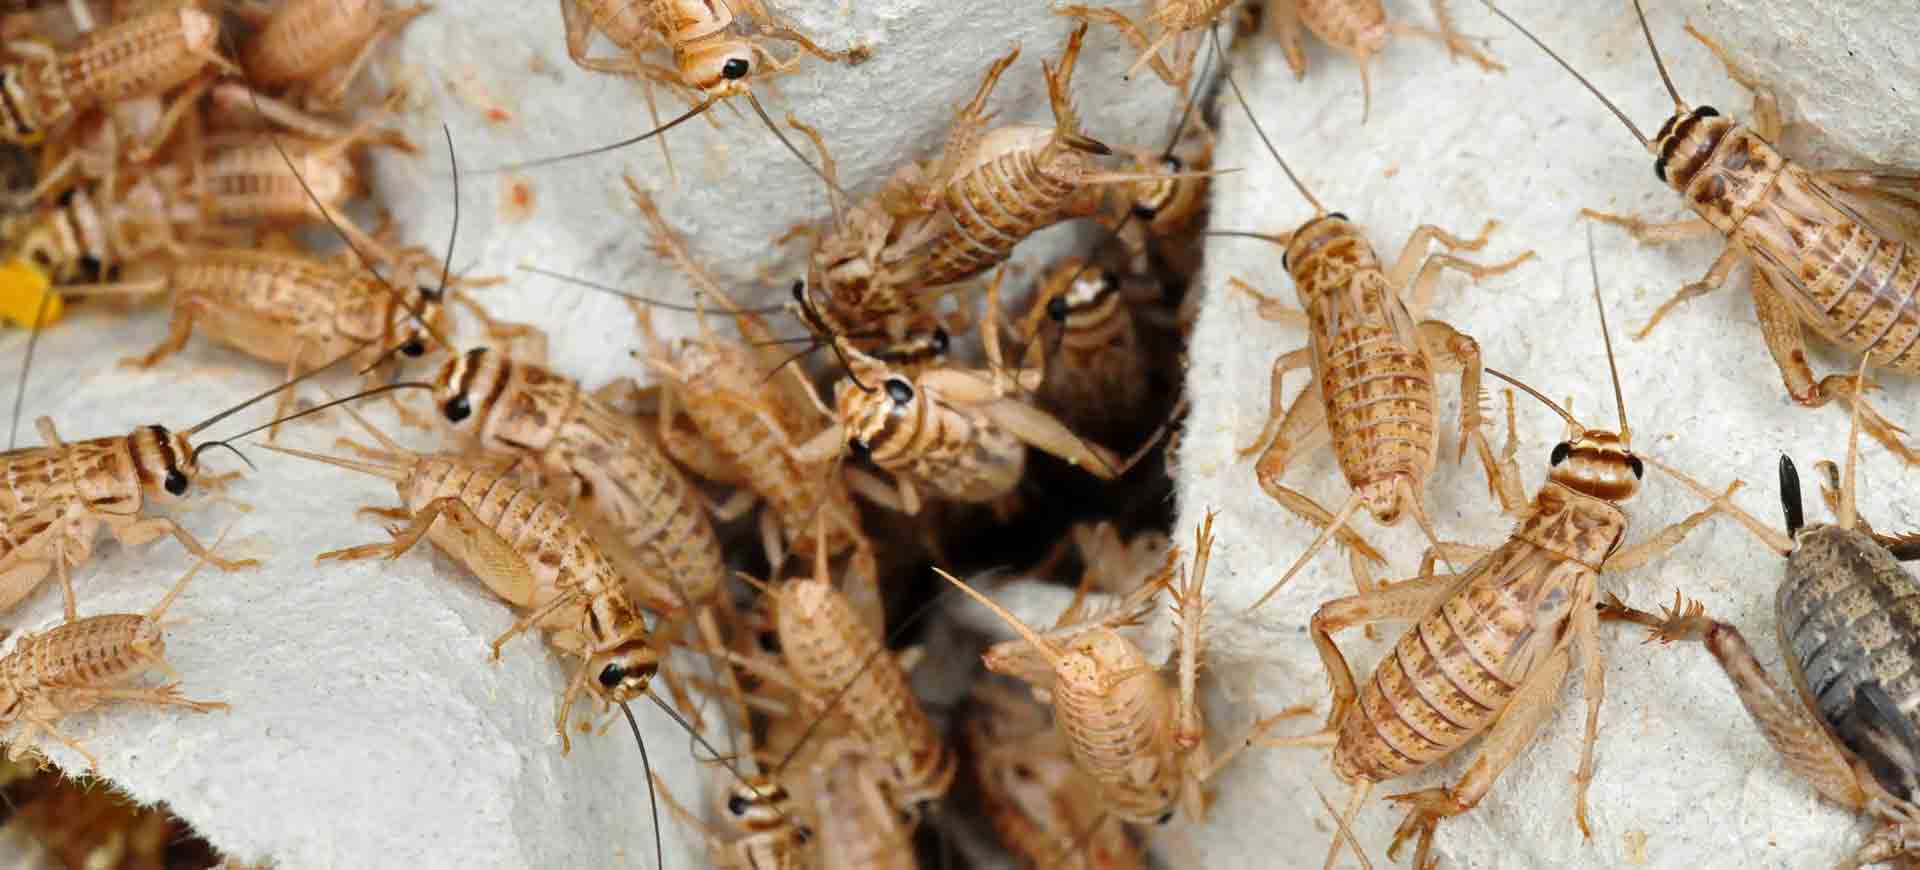 cricket pest control clairemont